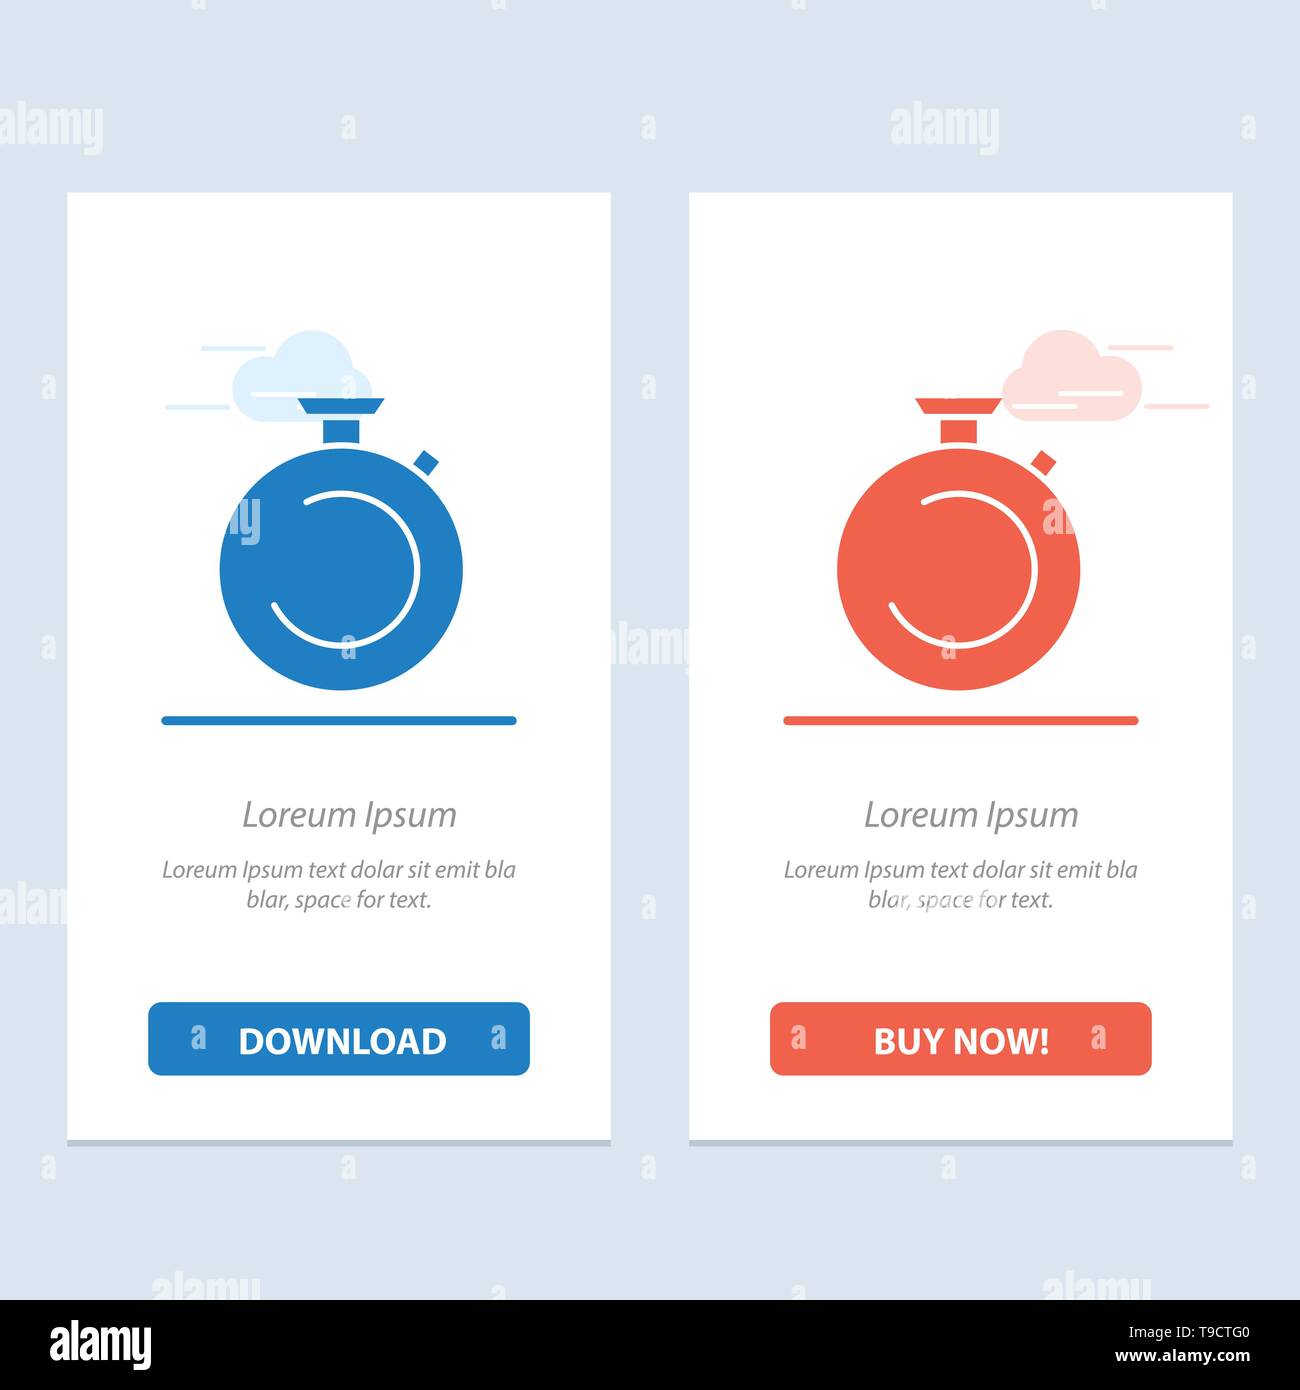 Brújula, reloj, reloj azul y rojo Descargar y comprar ahora widget web Plantilla de tarjeta Imagen de stock - Alamy